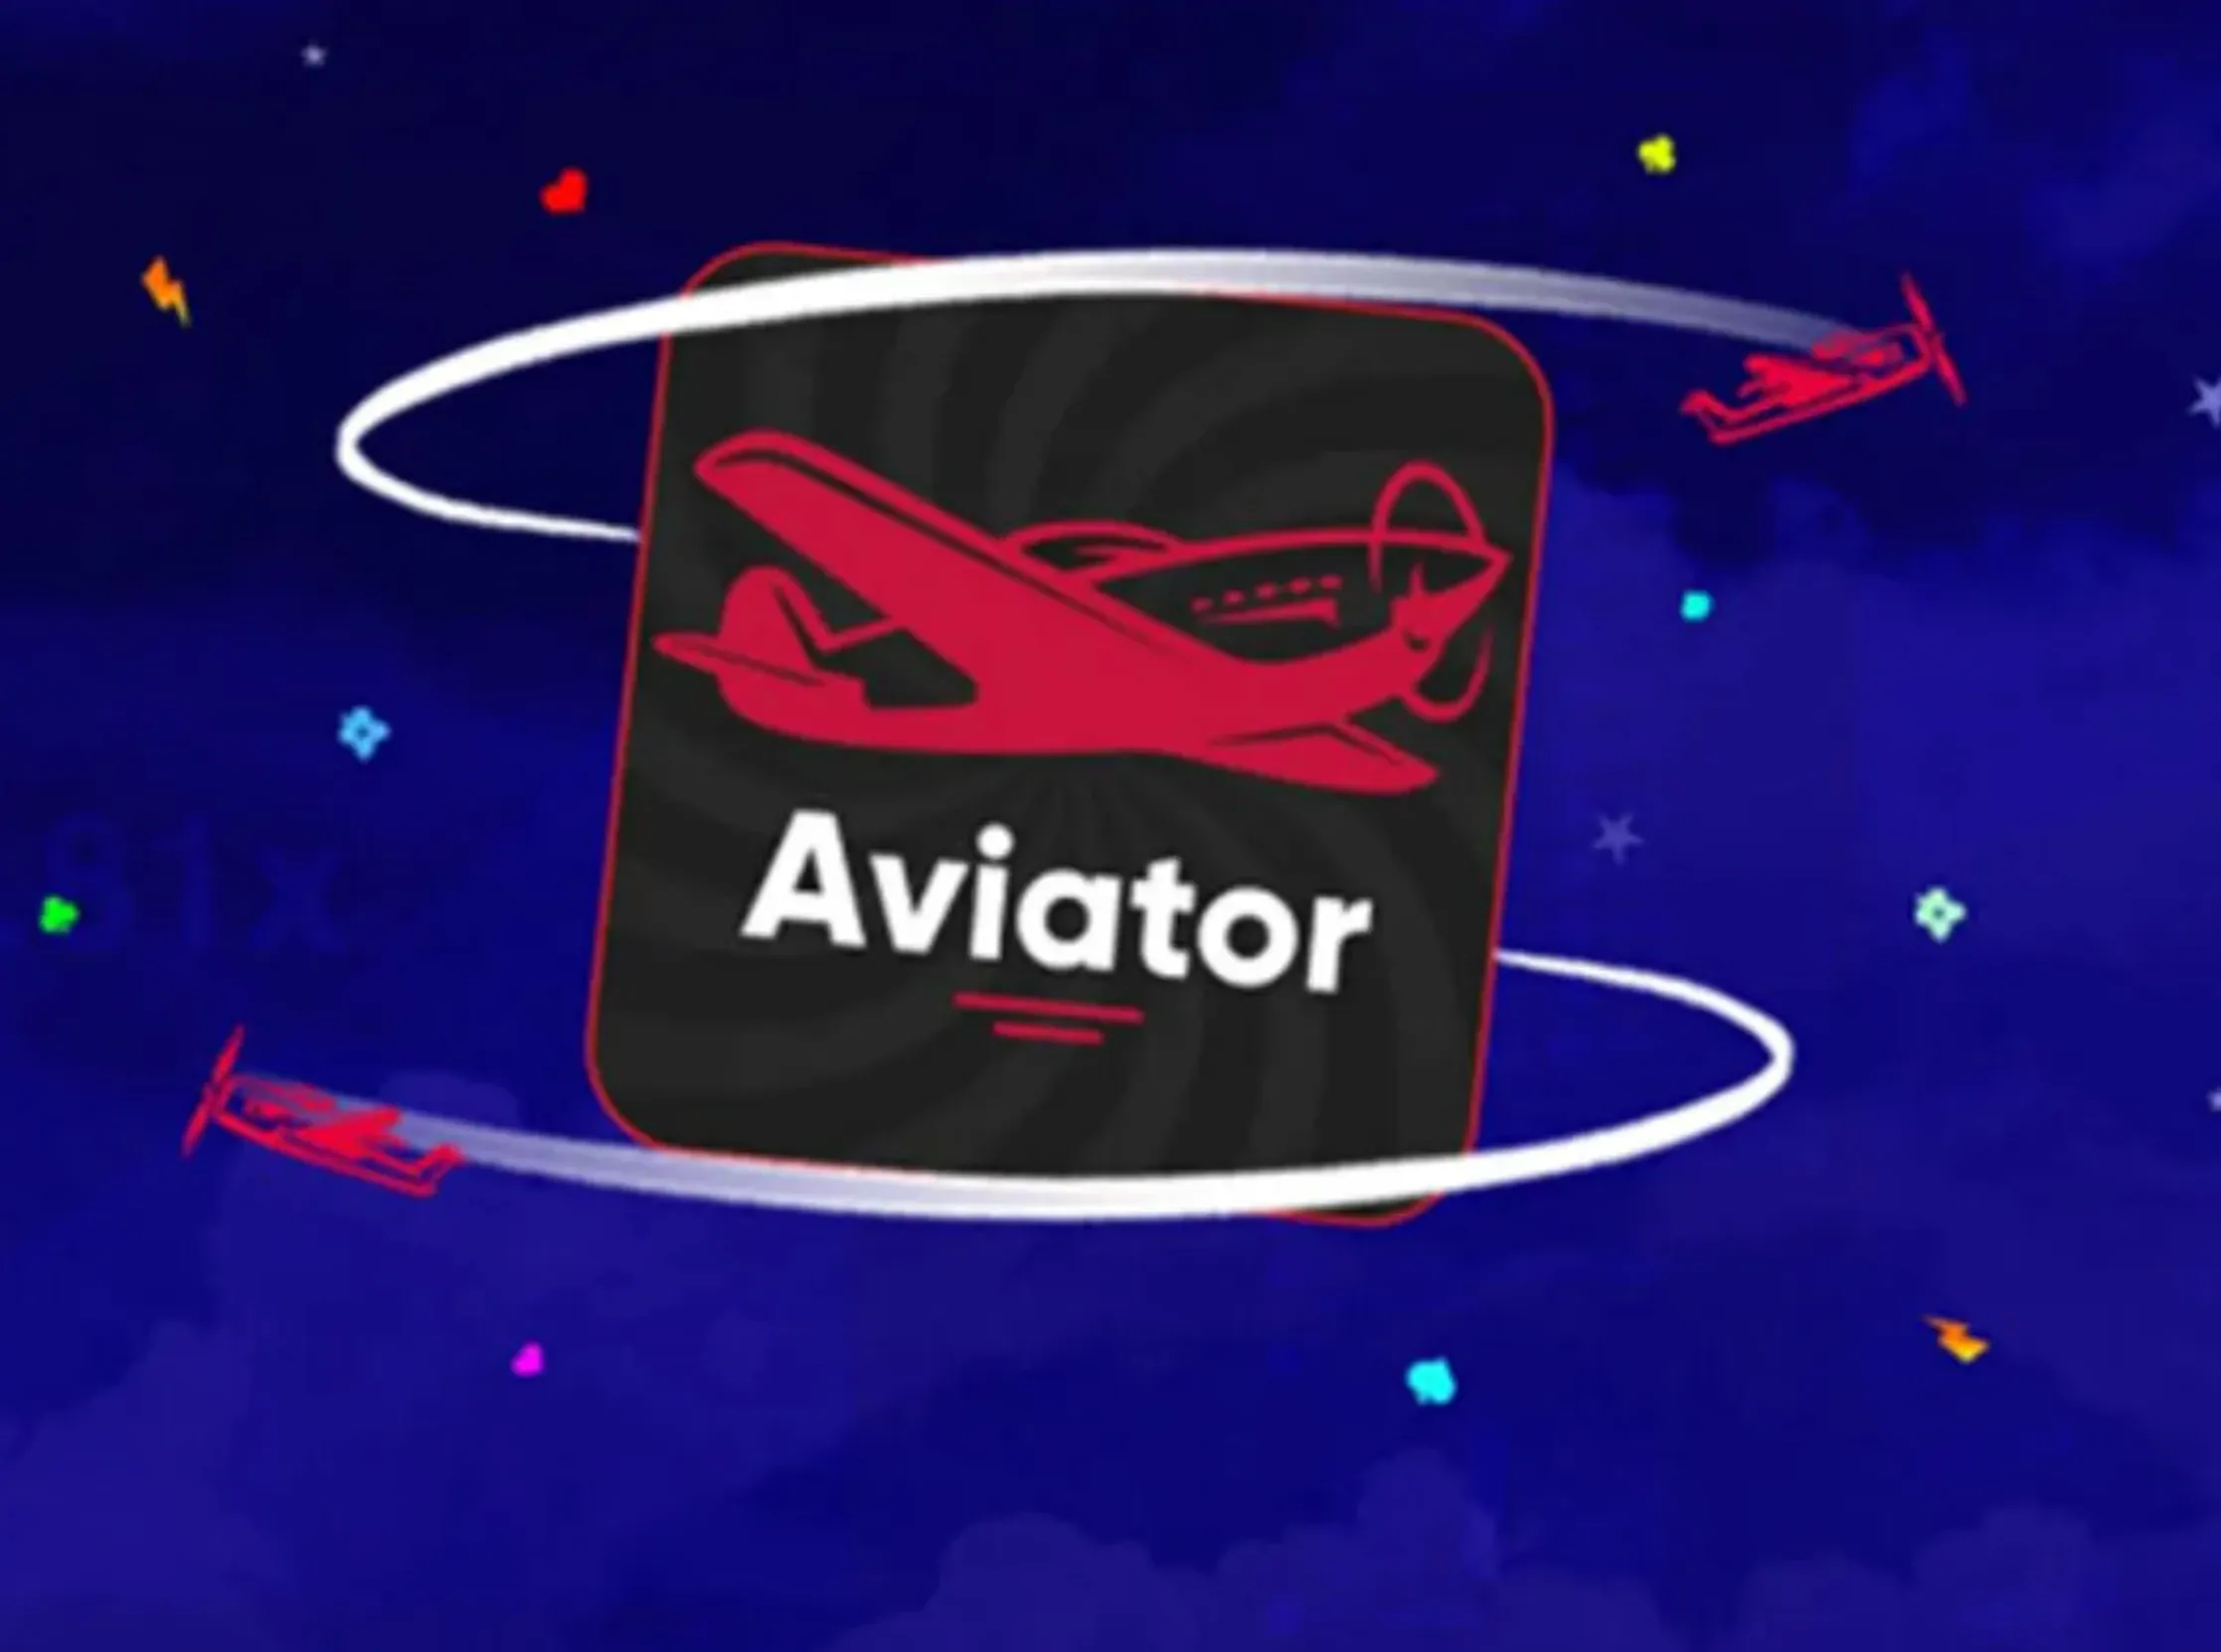 1Win Aviator Game